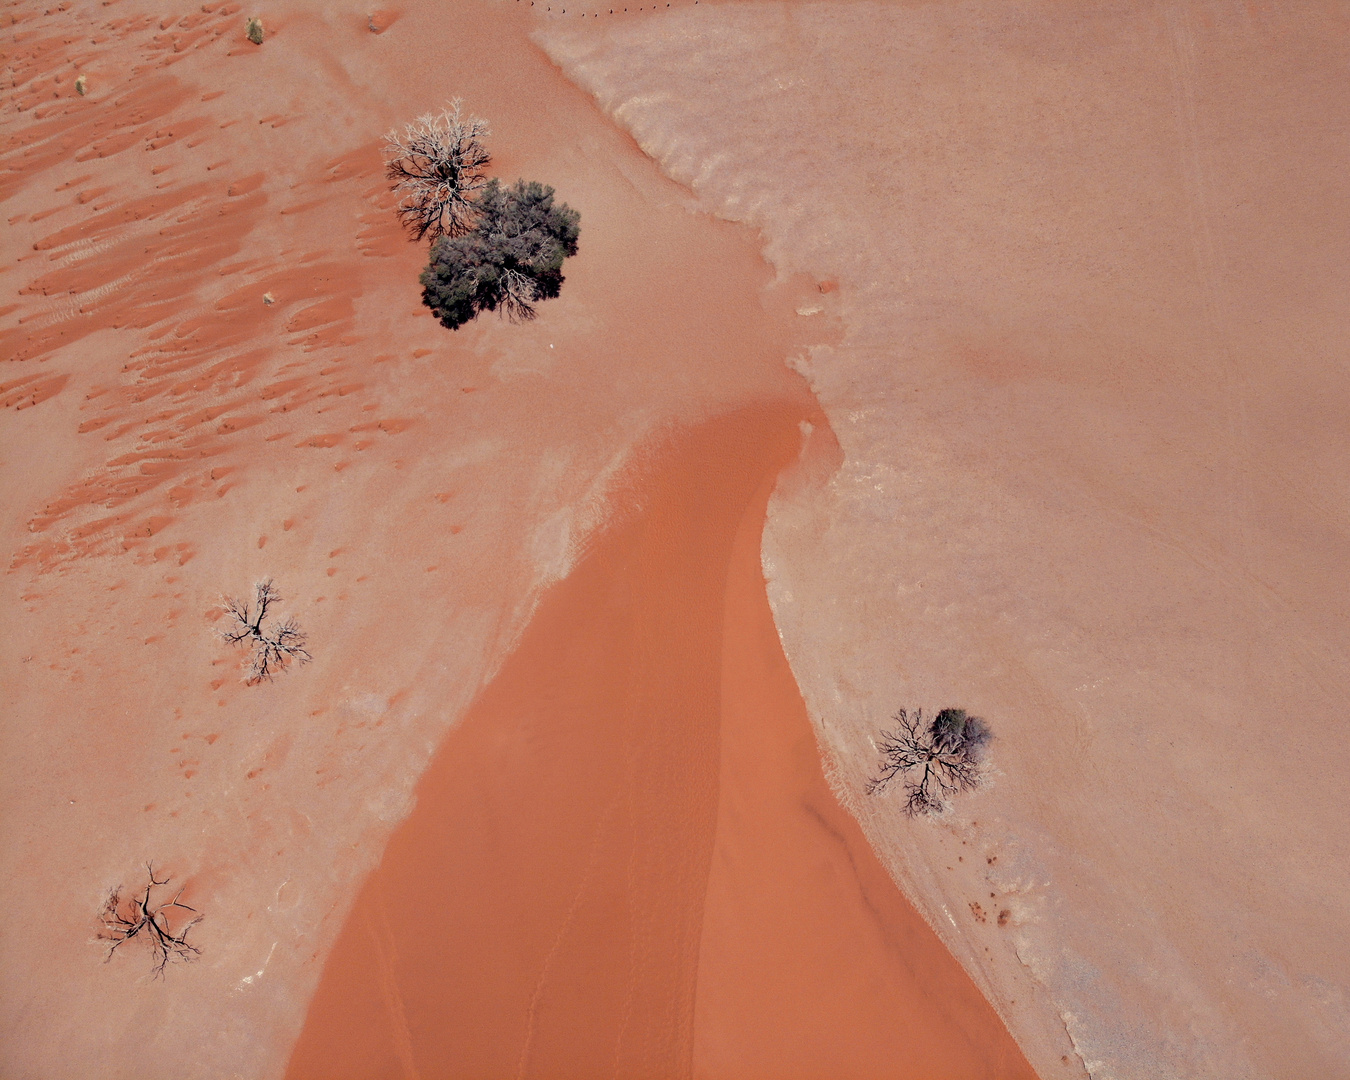 Namib- Wüste